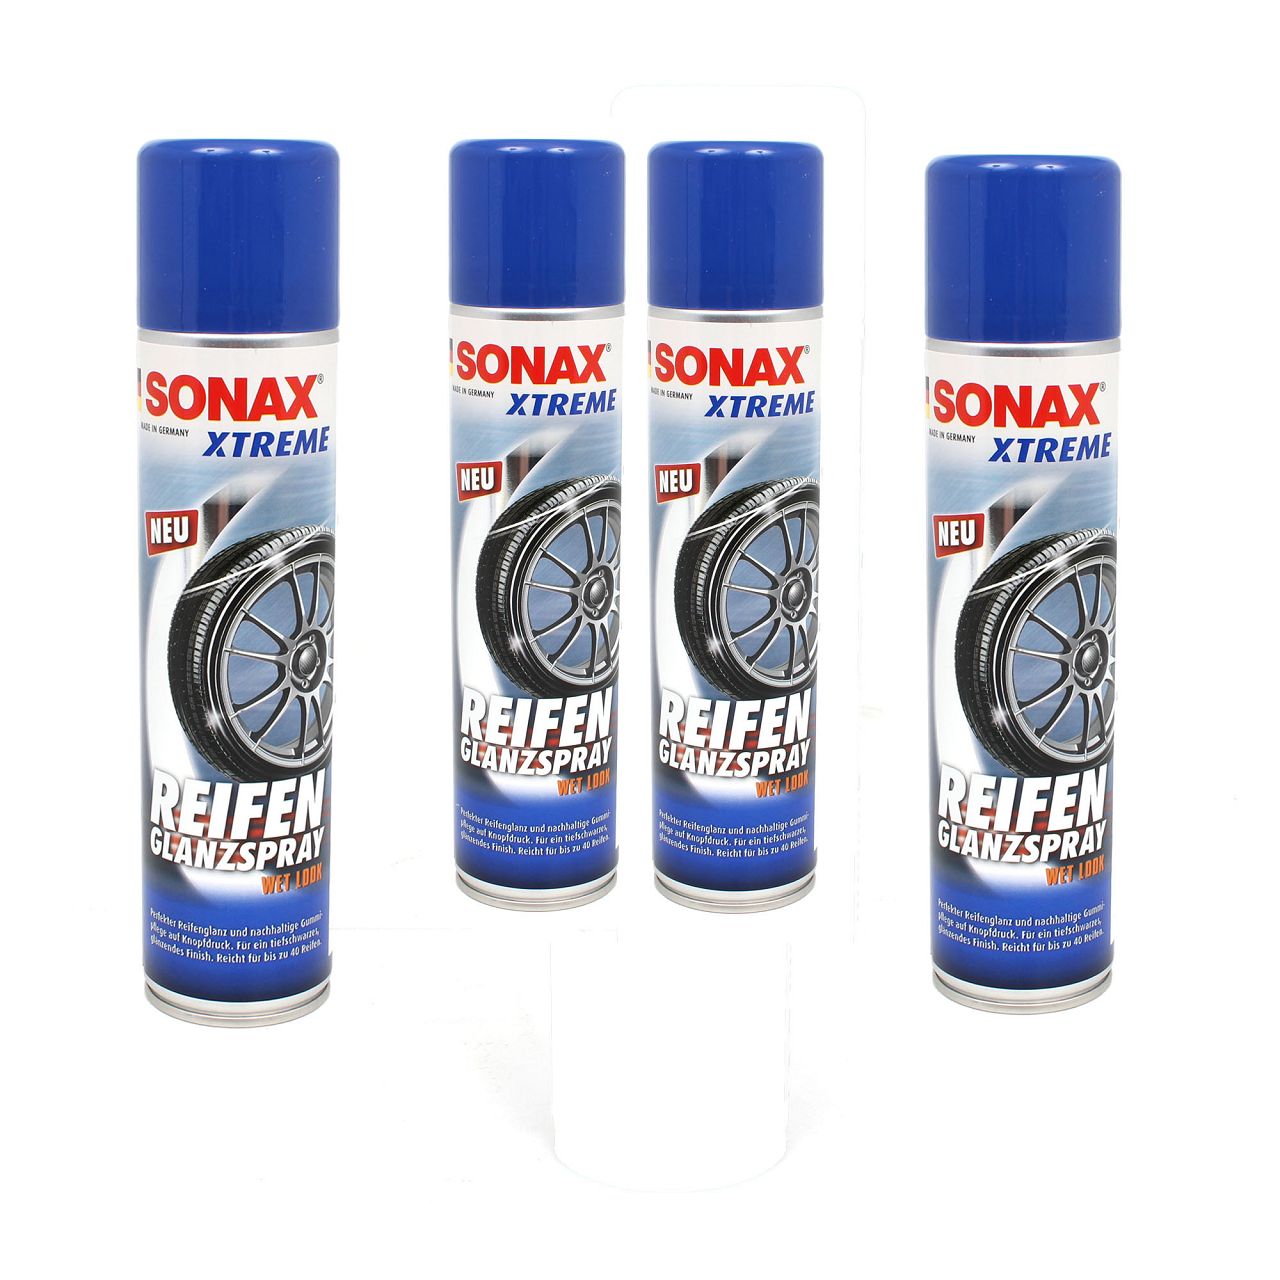 SONAX 235300 Xtreme ReifenGlanzSpray Wet Look Sprayflasche Reifenspray 4x 400ml